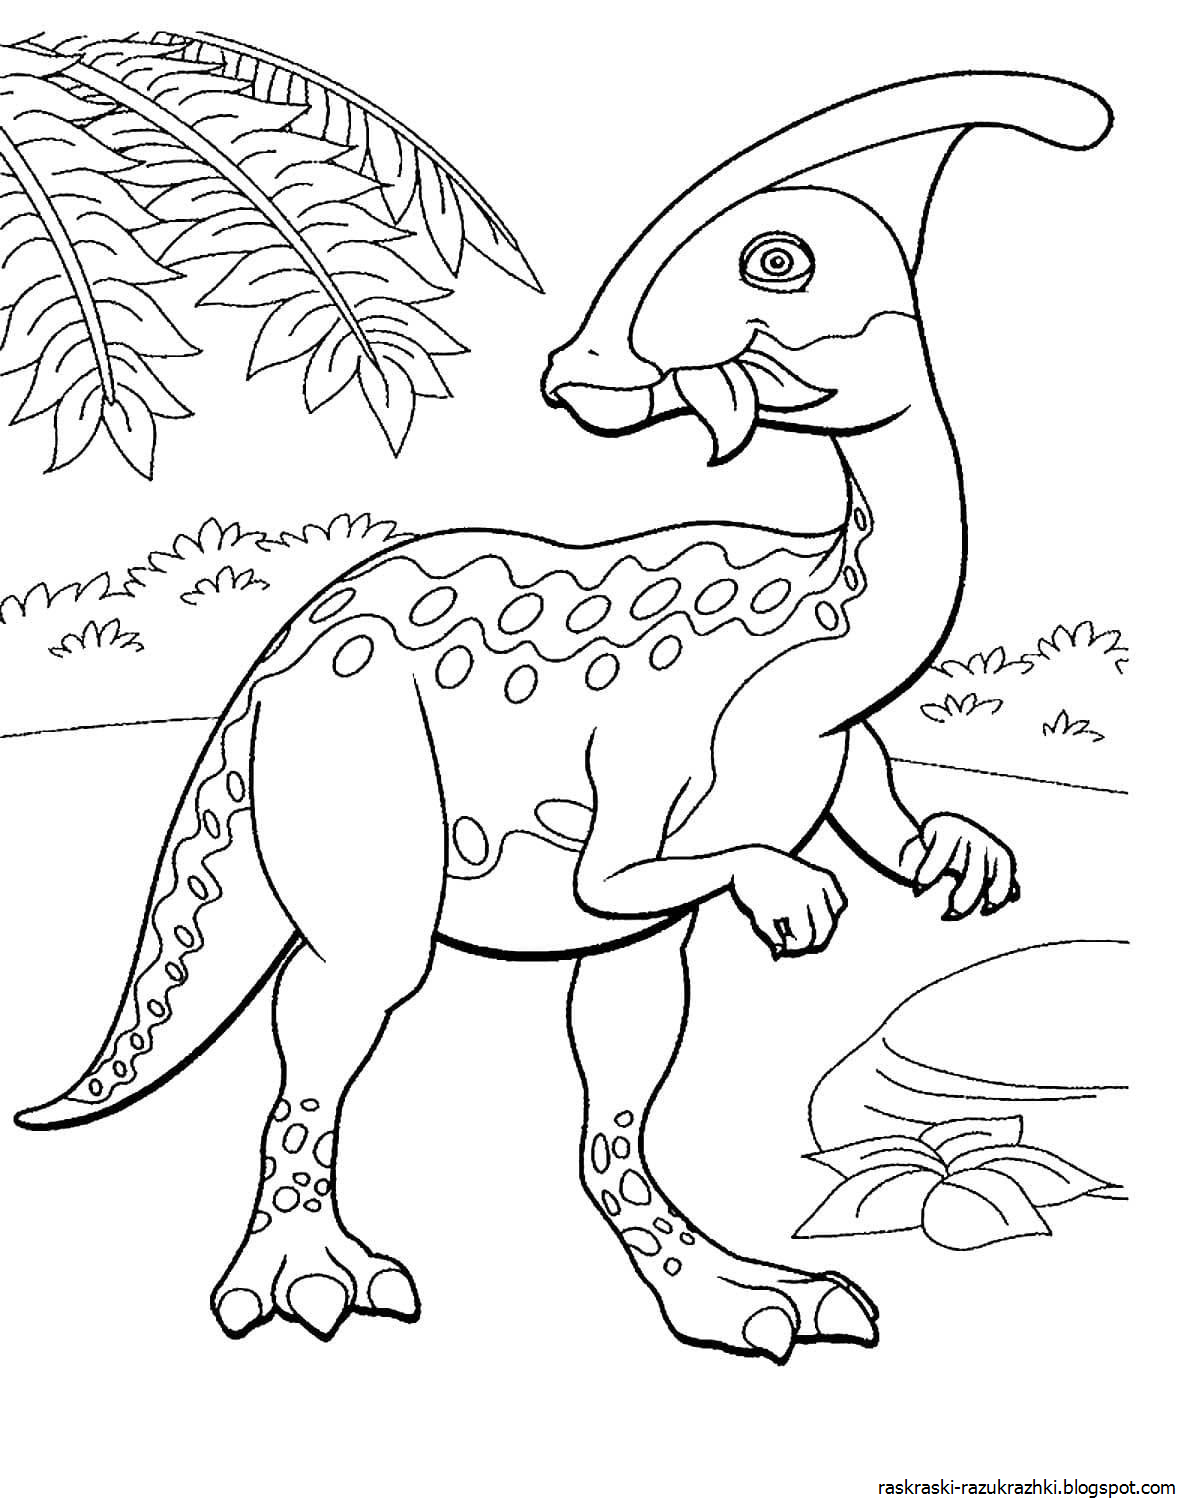 Динозавры для раскрашивания. Дино раскраска динозавры. Перри Паразауролоф. Динозавр раскраска для детей. Динозаврики раскраска для детей.